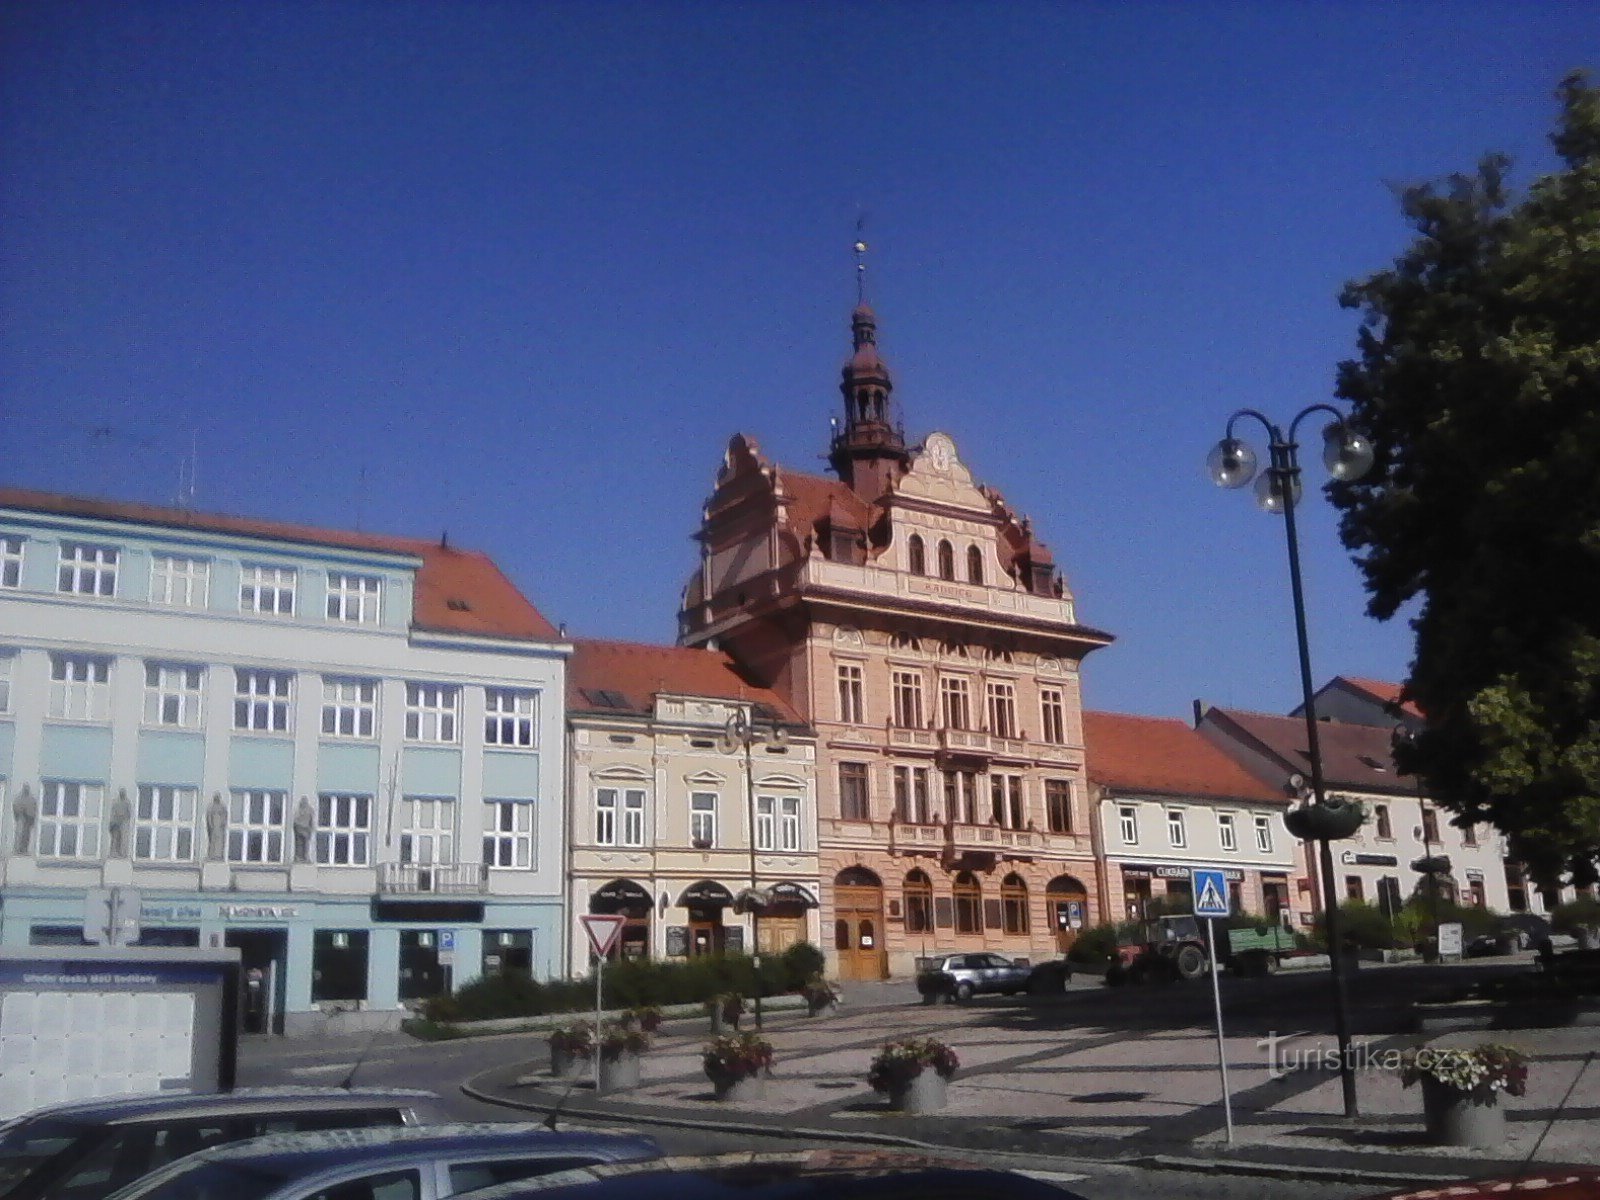 1. Platz in Sedlčany mit dem Rathaus.